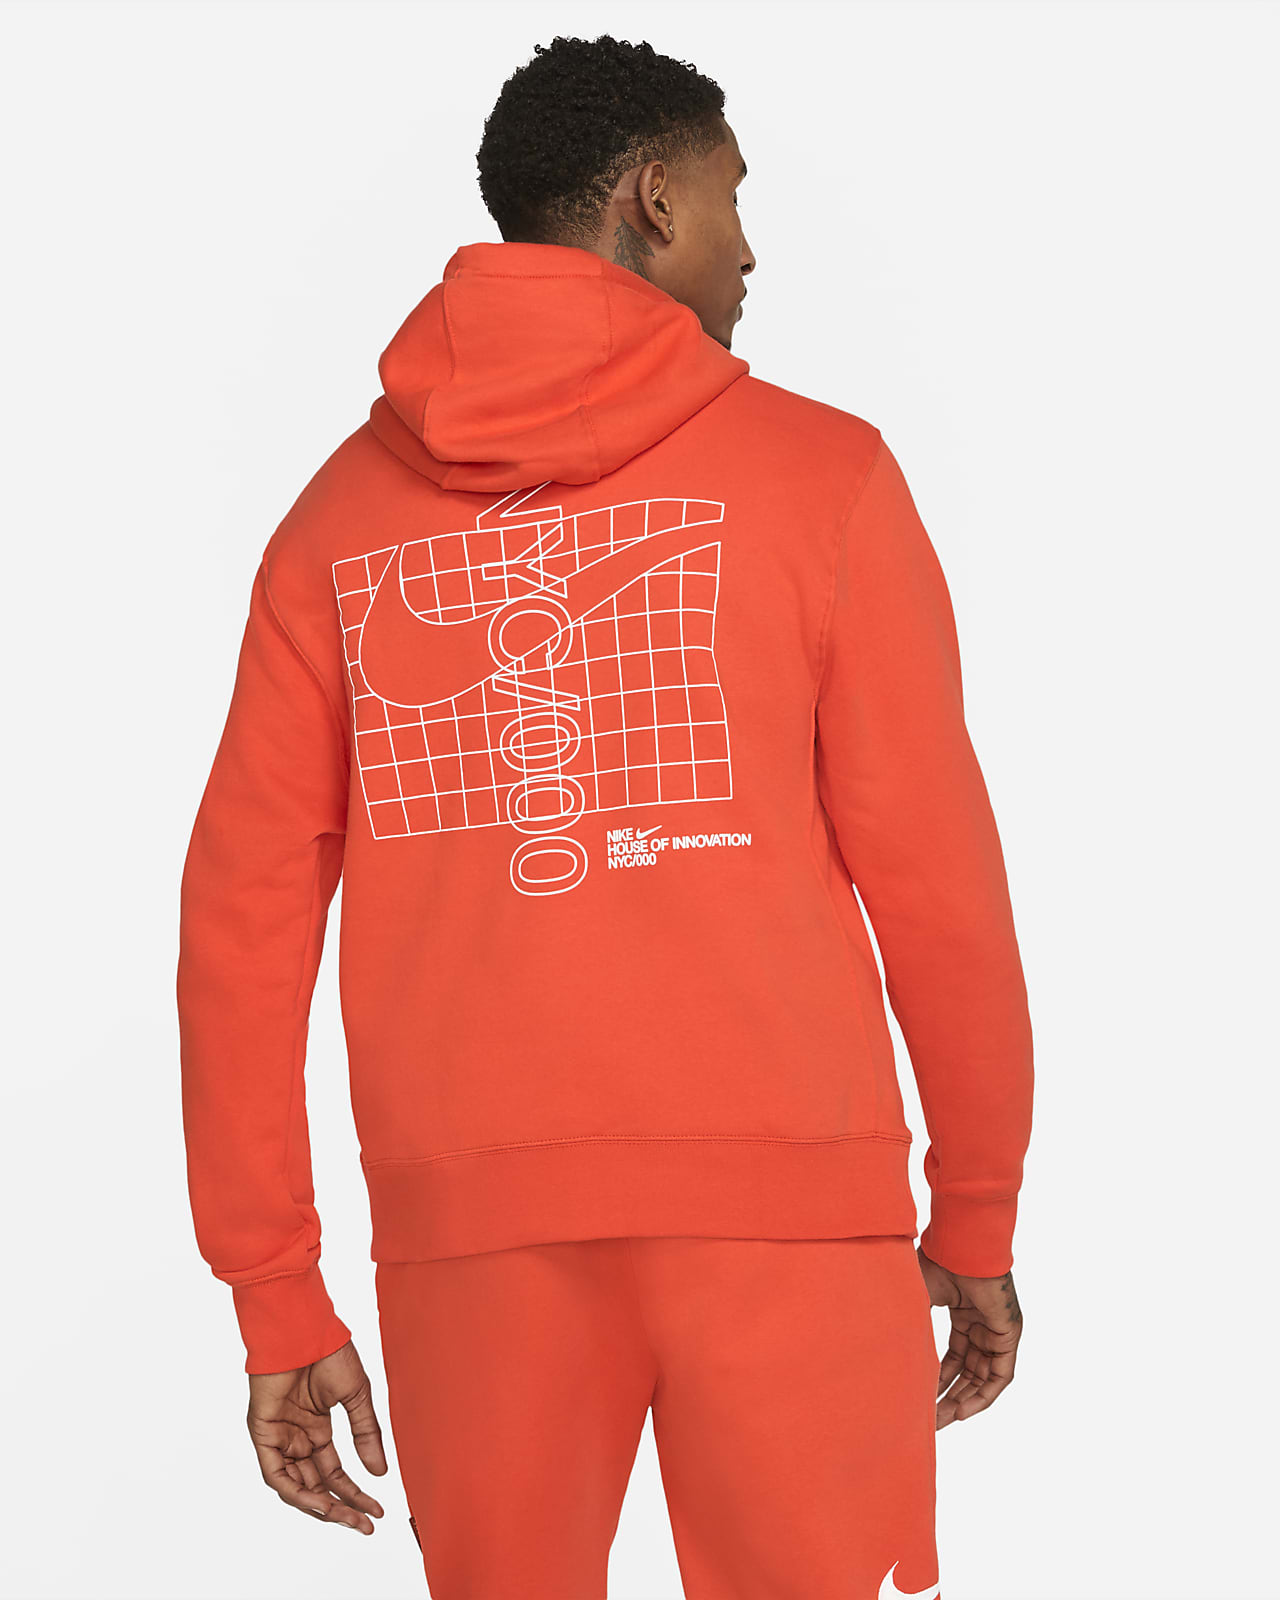 nike innovation hoodie